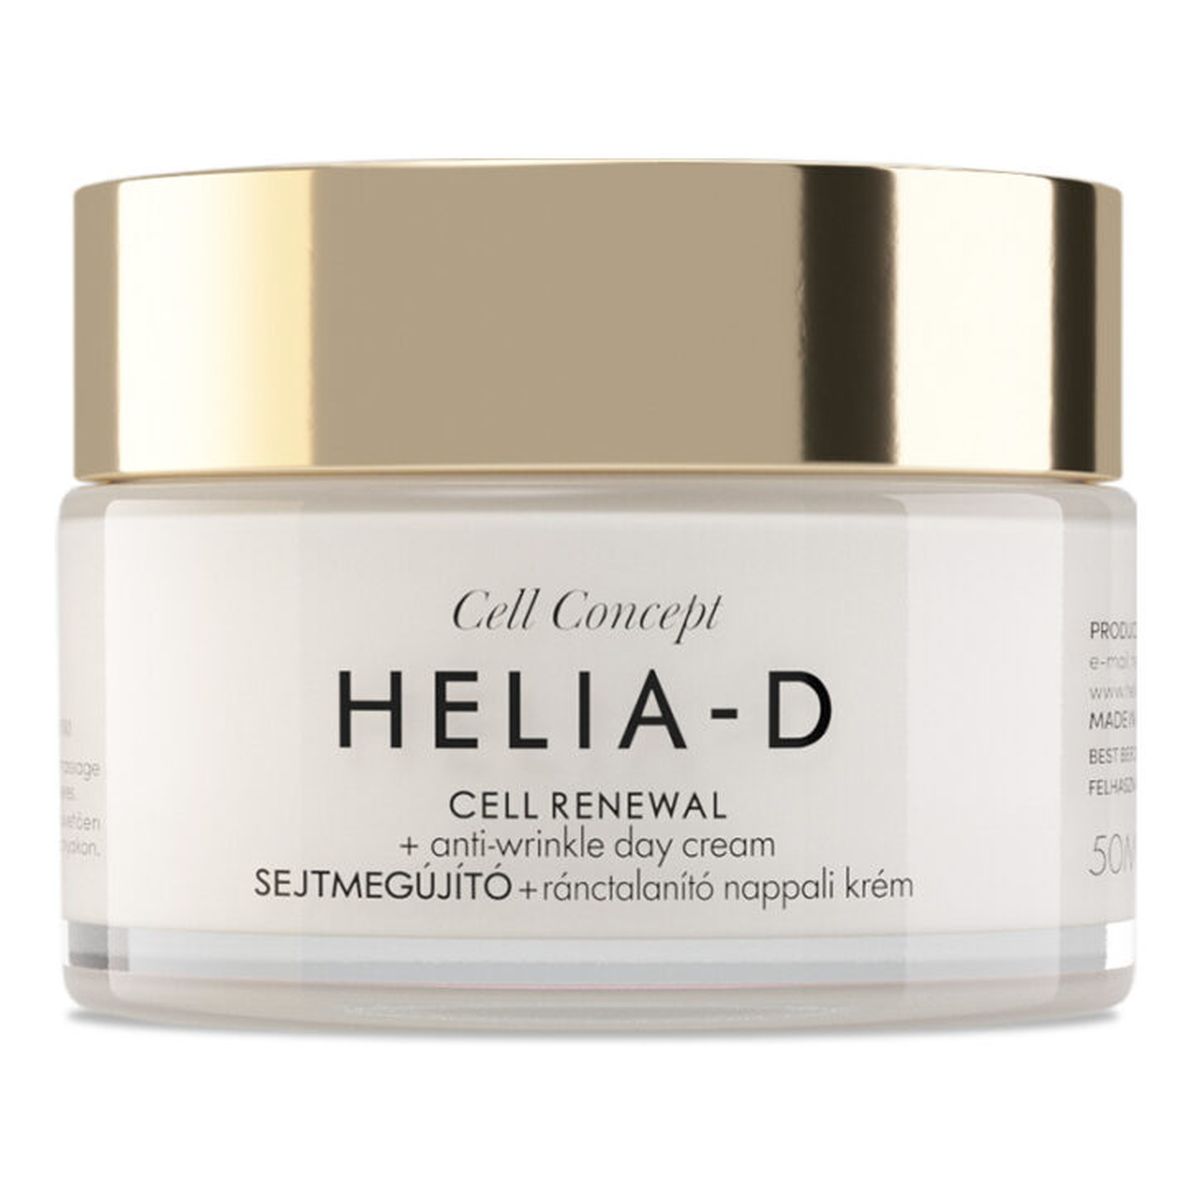 Helia-D Cell Concept Cell Renewal + Anti-Wrinkle Day Cream 55+ przeciwzmarszczkowy Krem na dzień 50ml